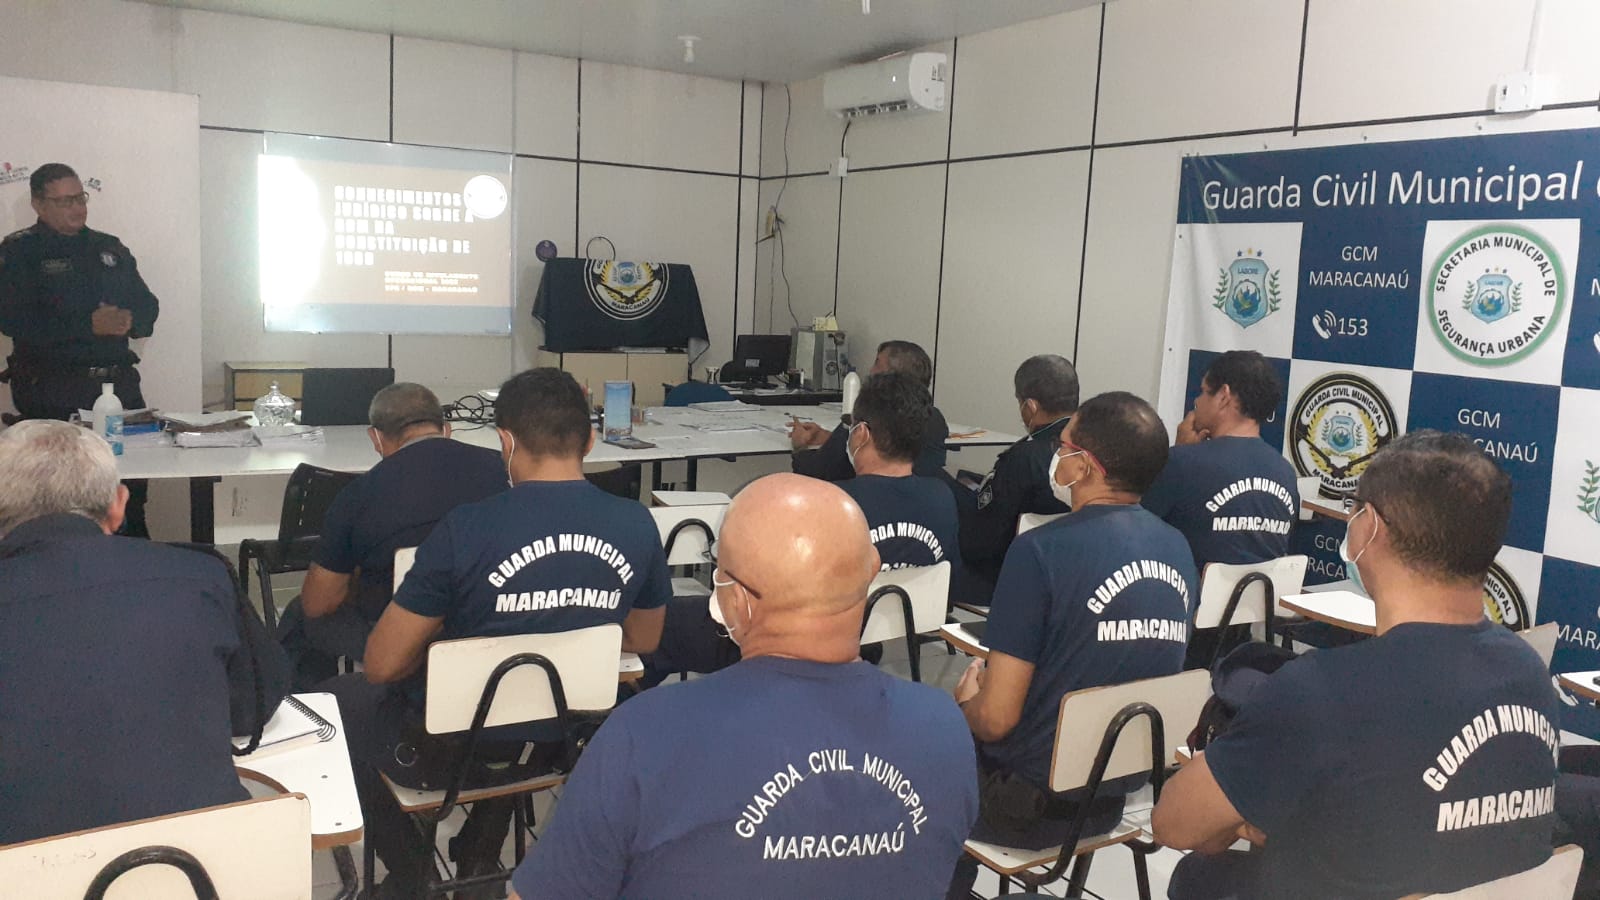 You are currently viewing Guardas Civis Municipais participam de curso de capacitação